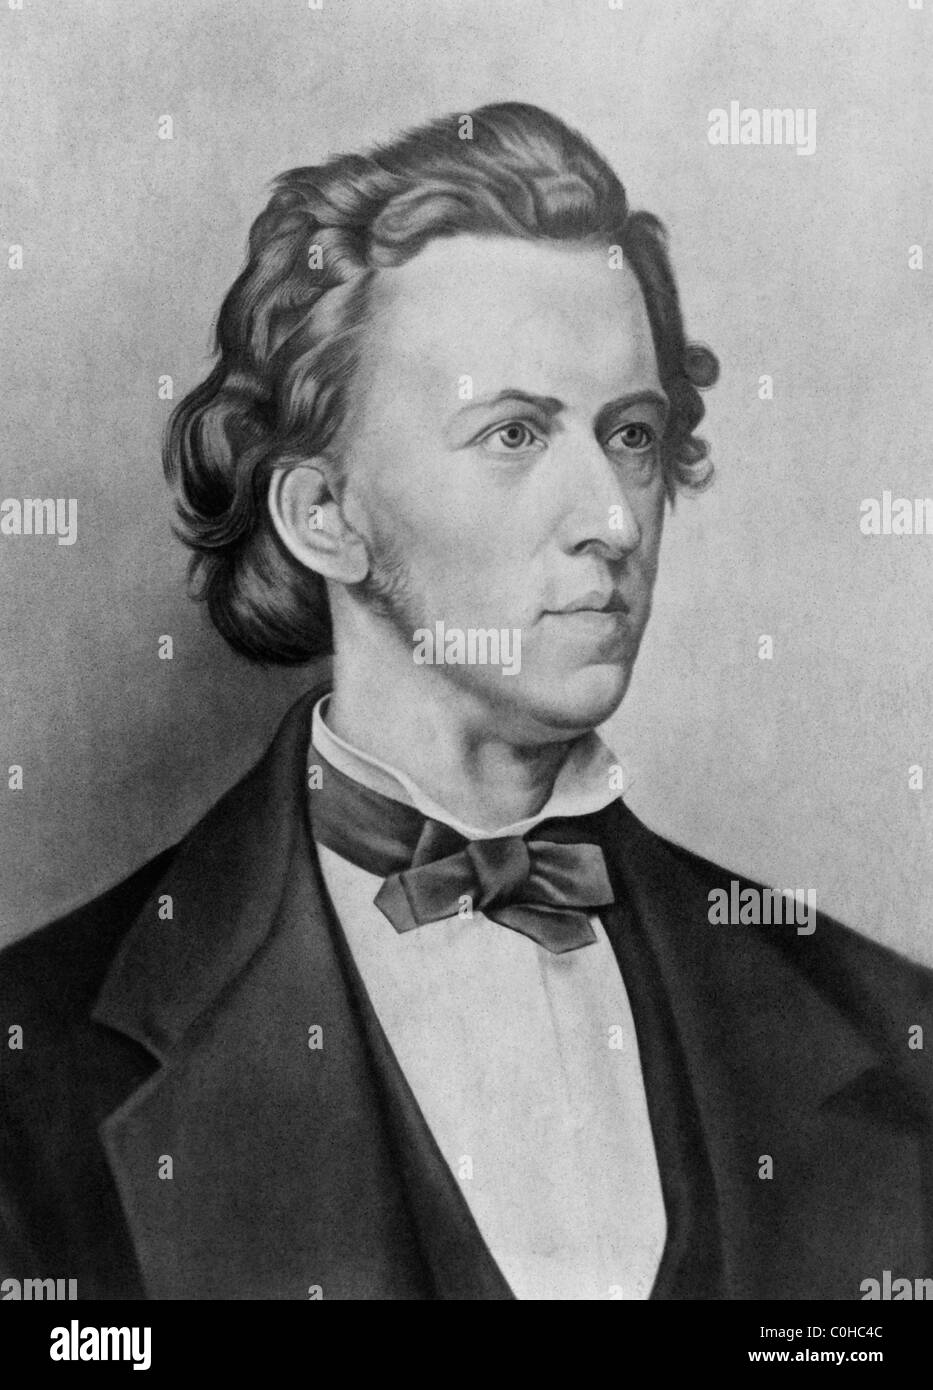 Jahrgang des 19. Jahrhunderts Porträt des polnischen Komponisten und Pianisten Frédéric Chopin (1810-1849). Stockfoto